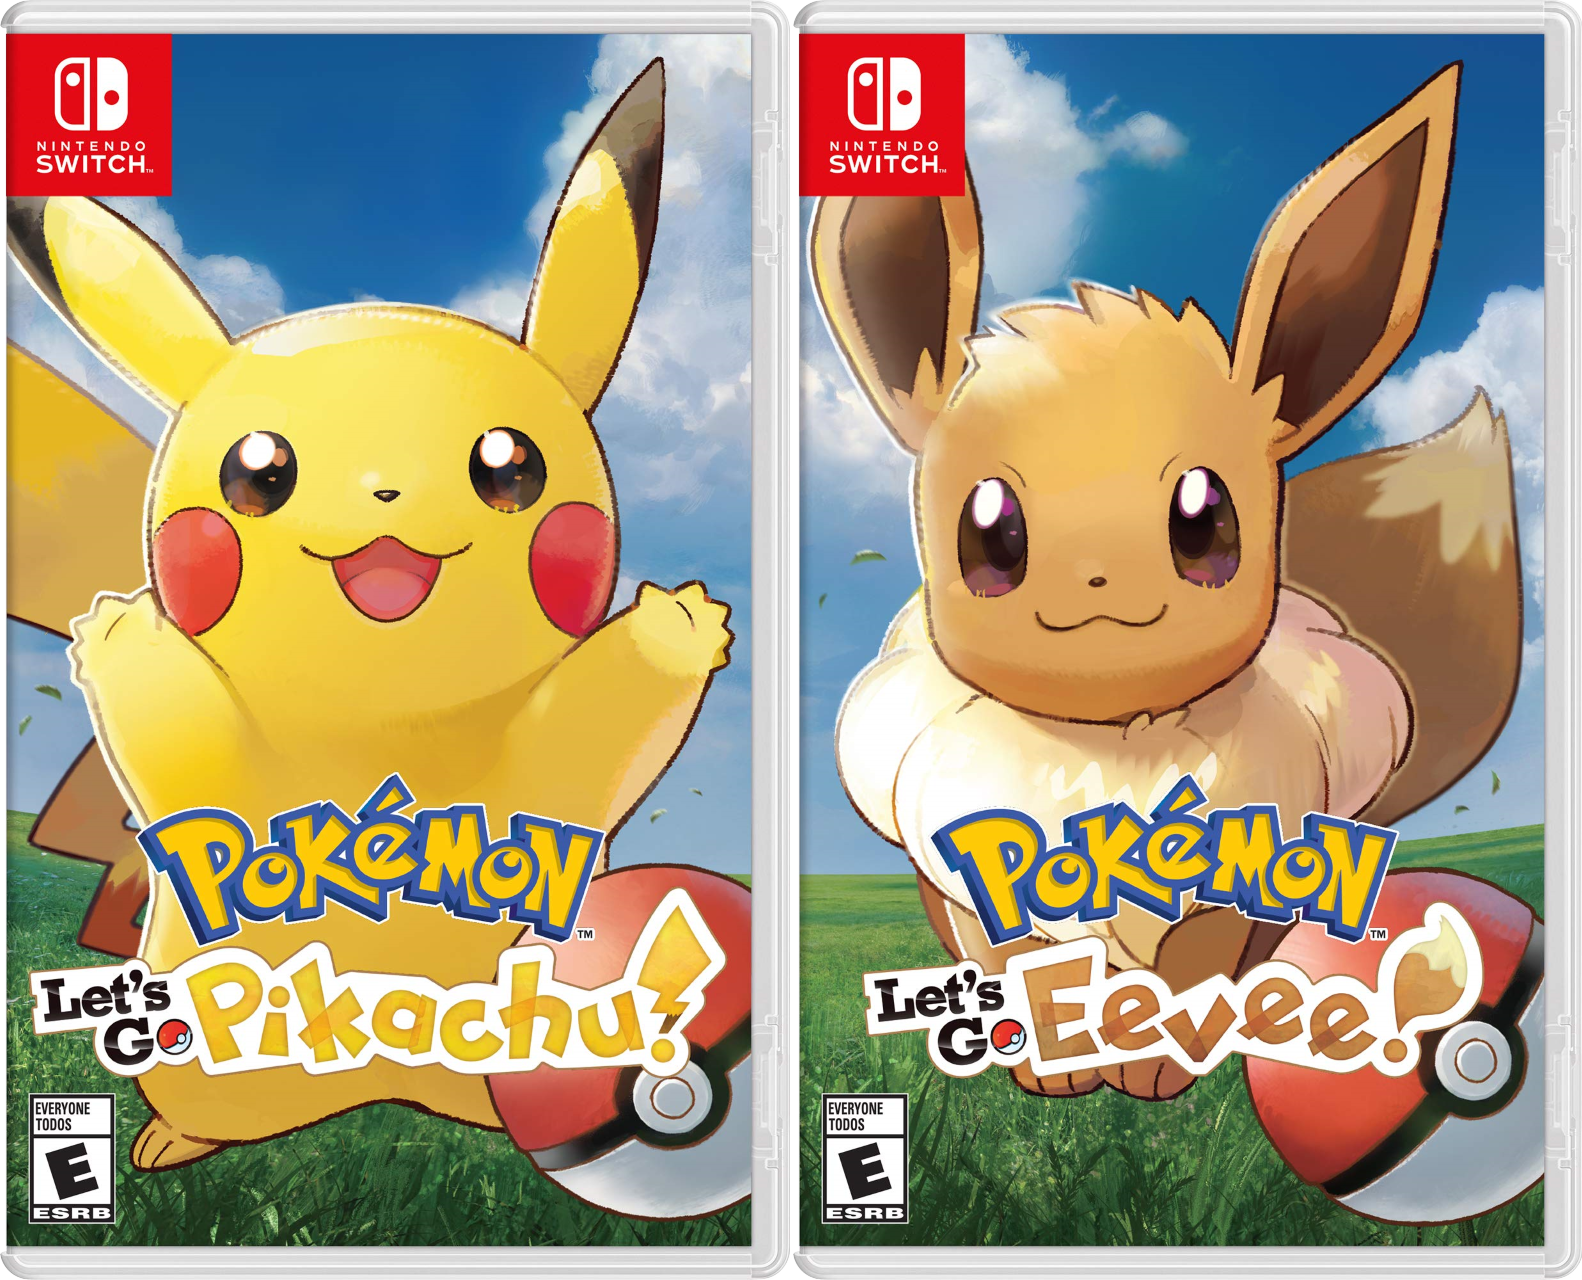 Let's Go Pikachu & Eevee EN Box Art - Pokémon Let's Go Pikachu 